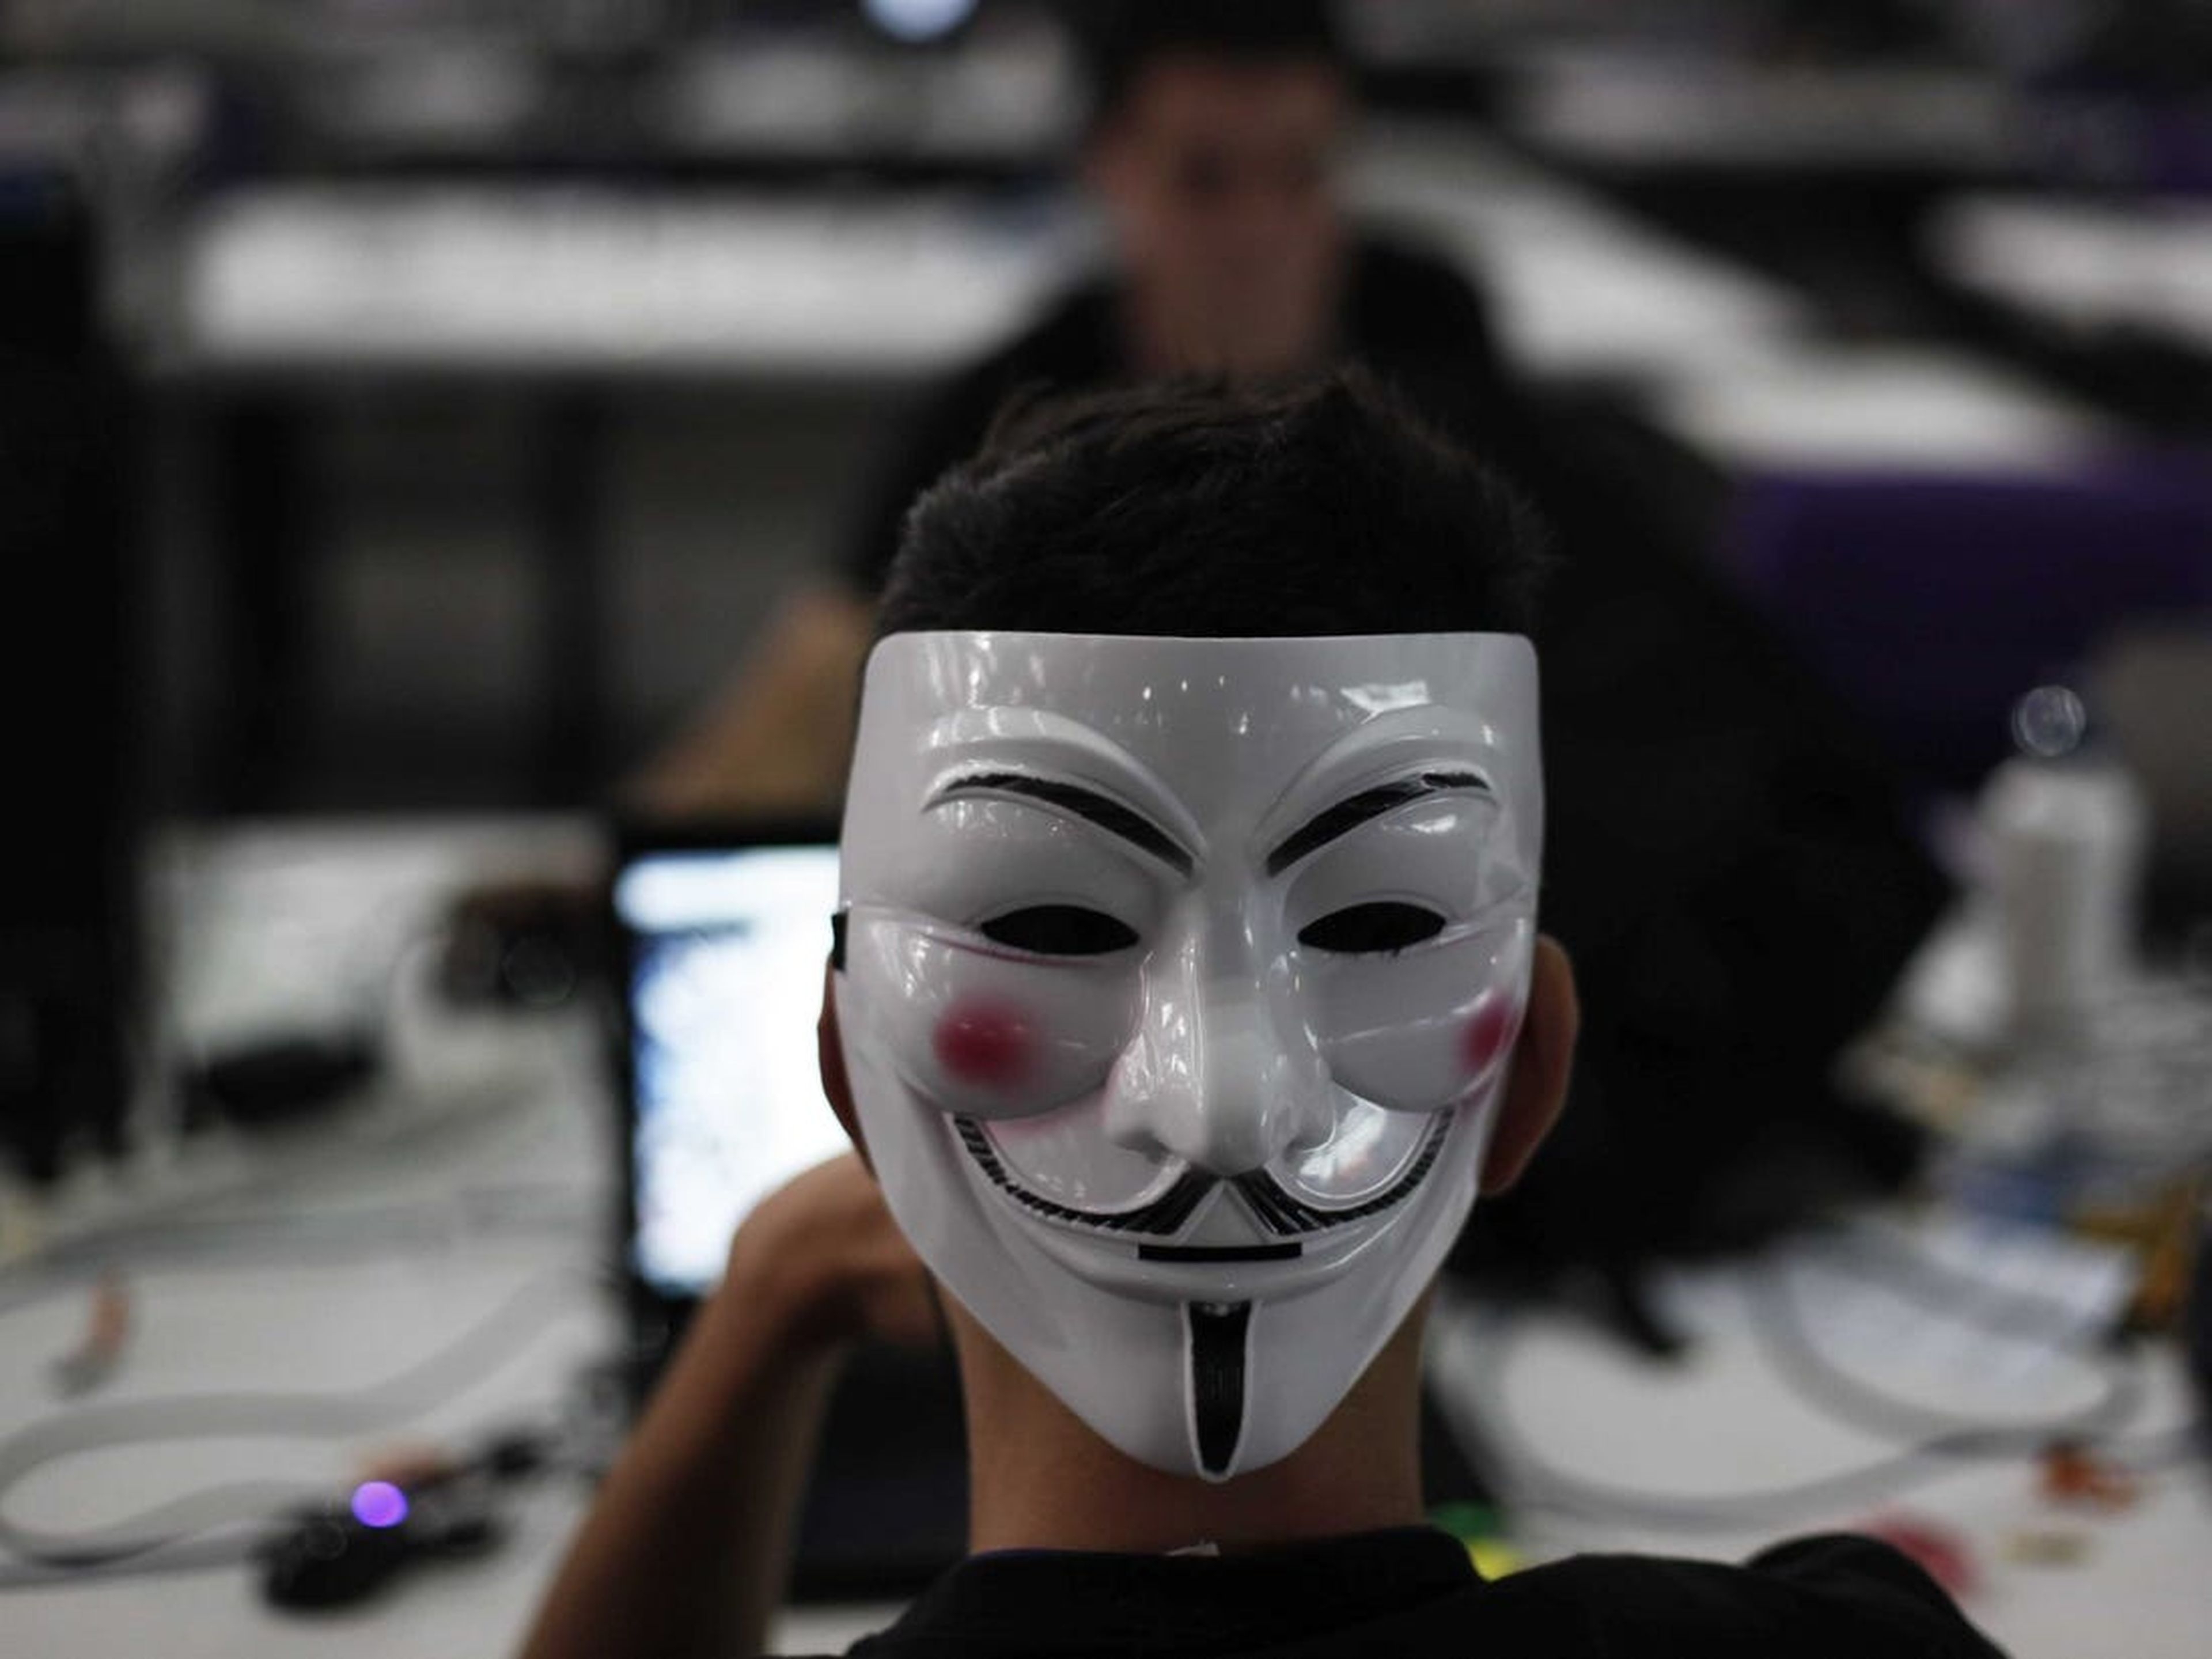 Un hombre con la máscara de Guay Fawkes navega por Internet en la Campus Party de Sao Paulo el 30 de enero de 2013.